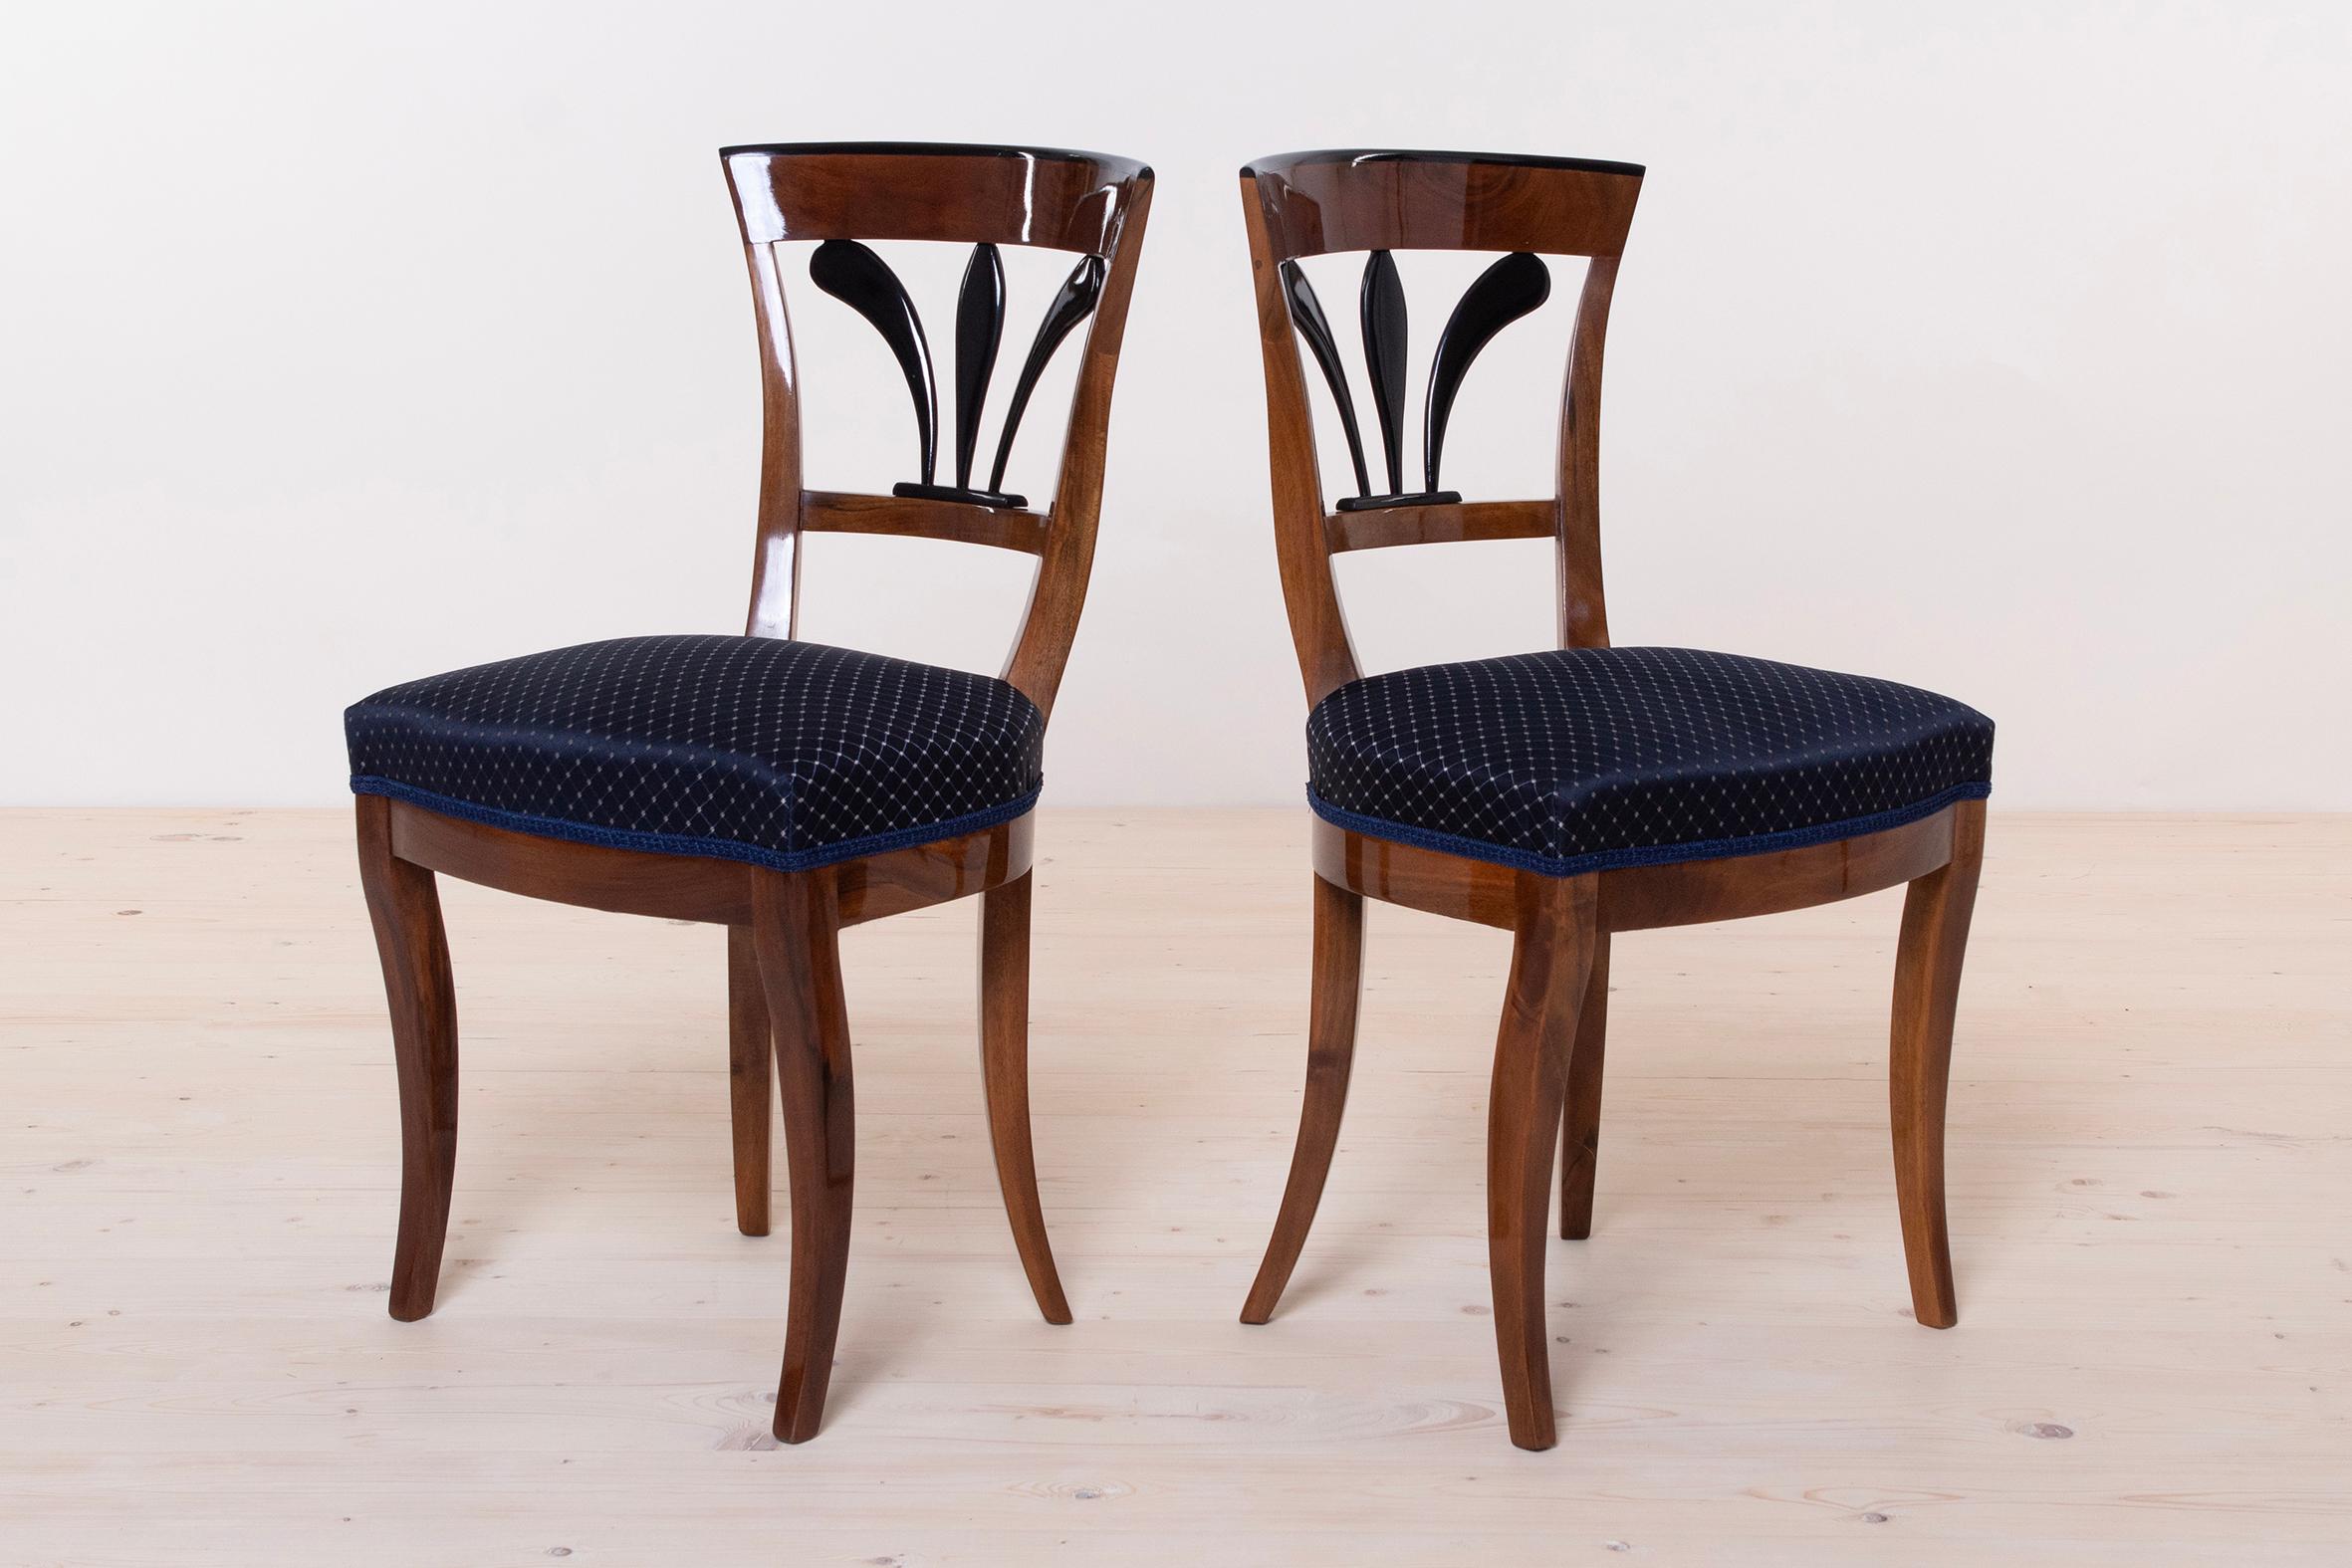 Dieses Set aus zwei Stühlen stammt aus Deutschland aus dem Biedermeier - 19. Jahrhundert. Die Stühle sind aus Walnussholz gefertigt. Das Set ist komplett renoviert. Alle Holzelemente wurden gereinigt und mit Schellackpolitur, die von Hand mit einem